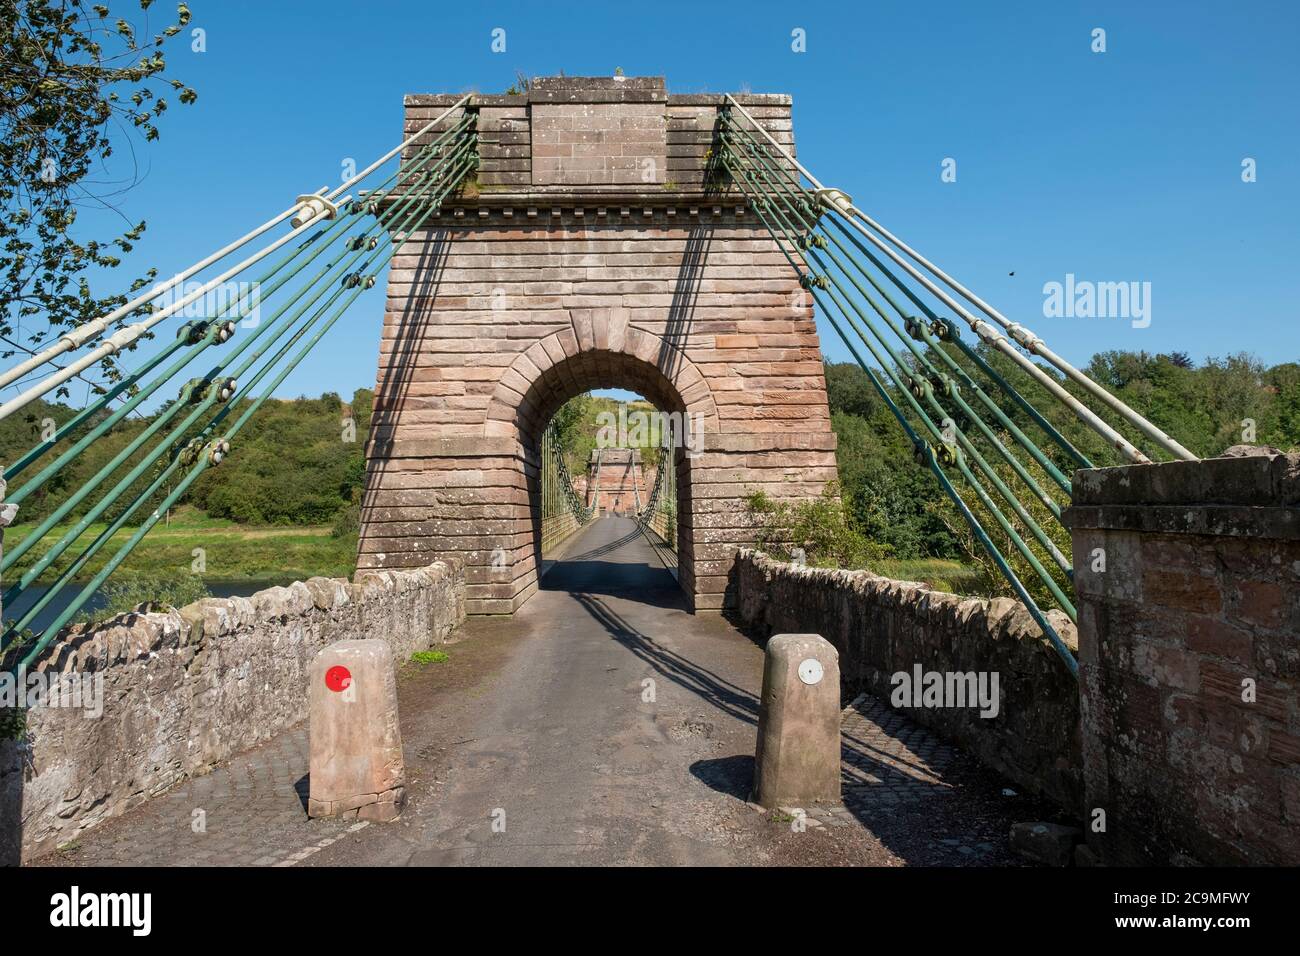 Die Union Suspension Bridge, die den Fluss Tweed zwischen Horncliffe, Northumberland, England und Fishwick, Scottish Borders, Schottland überspannt. Stockfoto